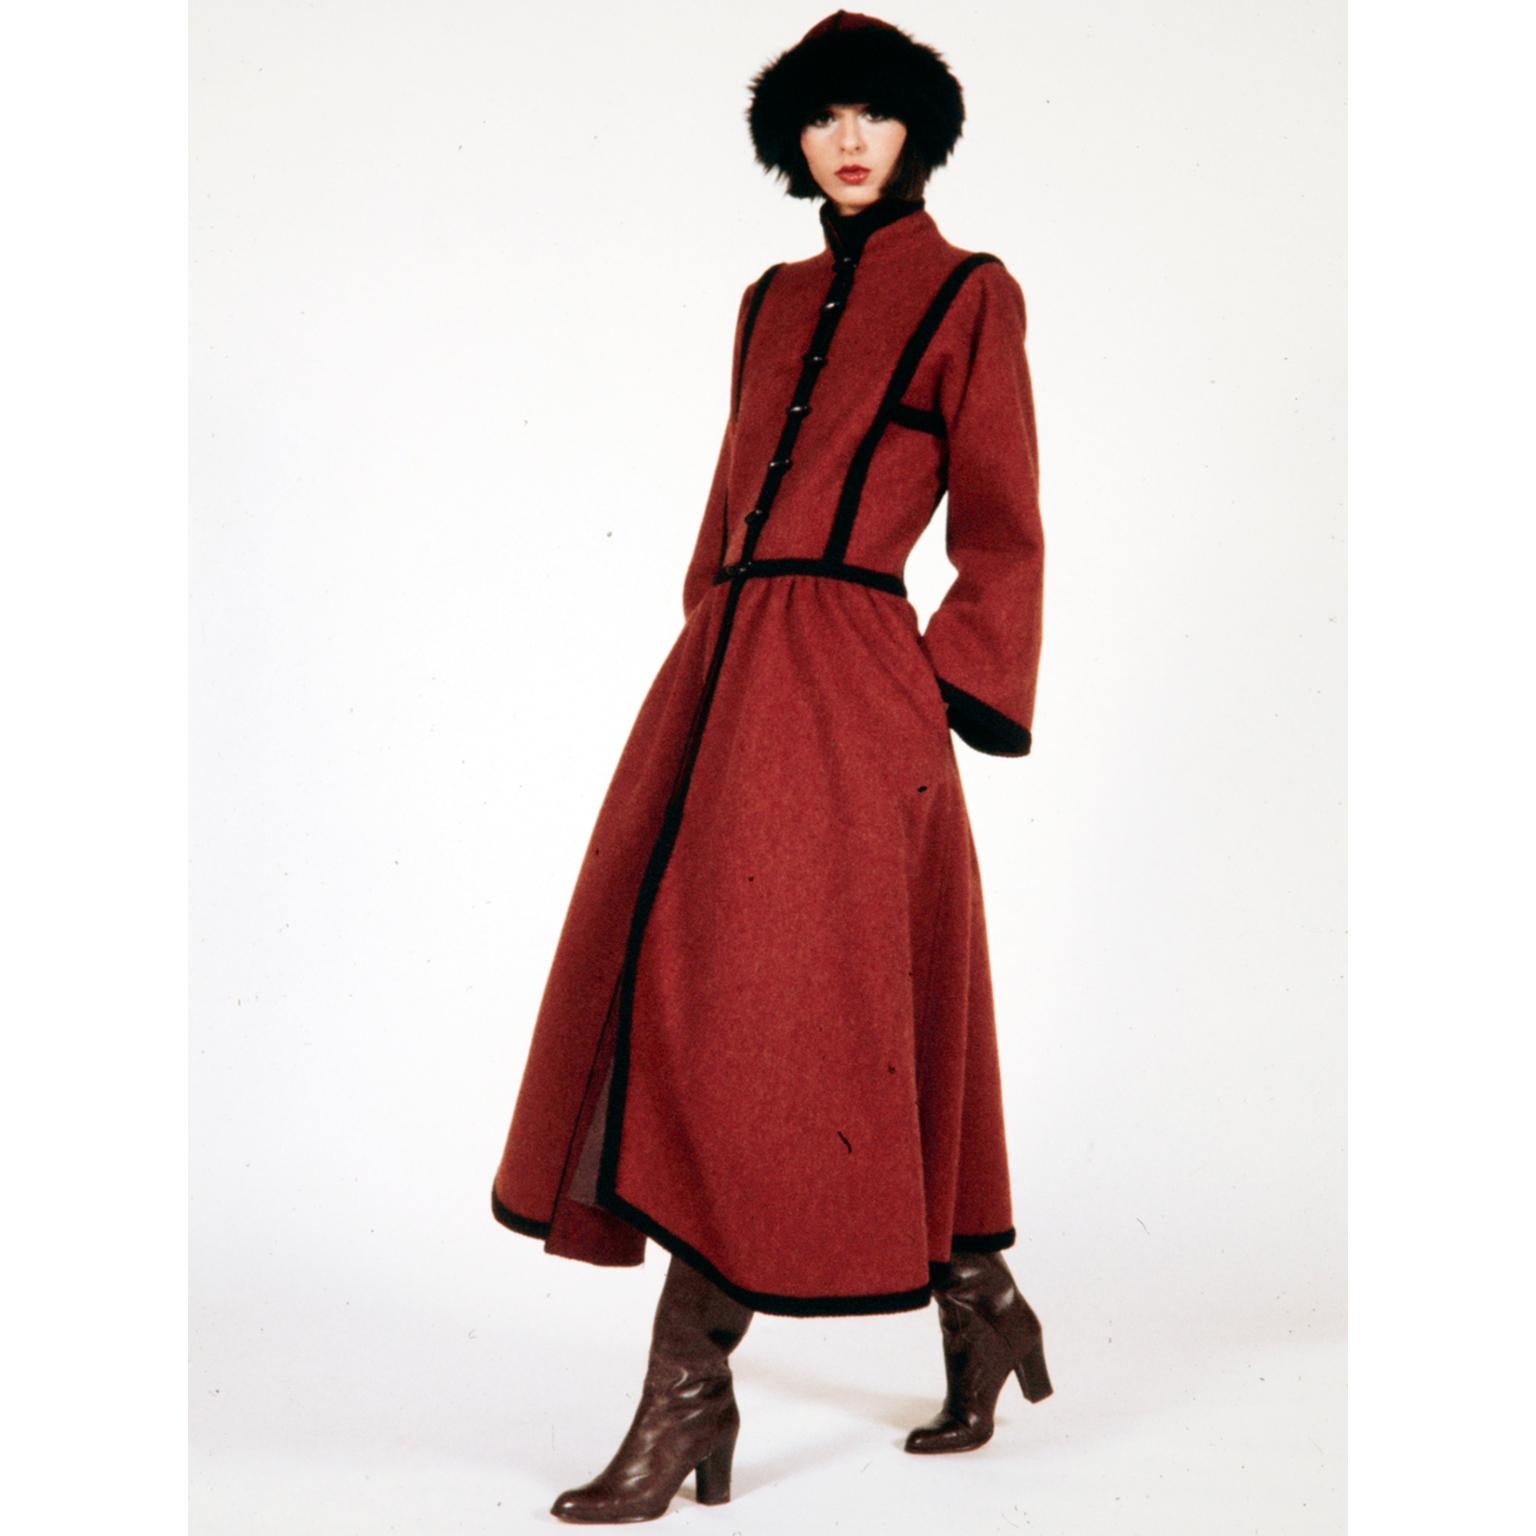 Ce manteau YSL 1976 en laine rouge bordeaux de style cosaque est une pièce emblématique d'Yves Saint Laurent. Cet incroyable manteau a été inspiré par la collection haute couture des Ballets Russes. La qualité et les détails sont exceptionnels.